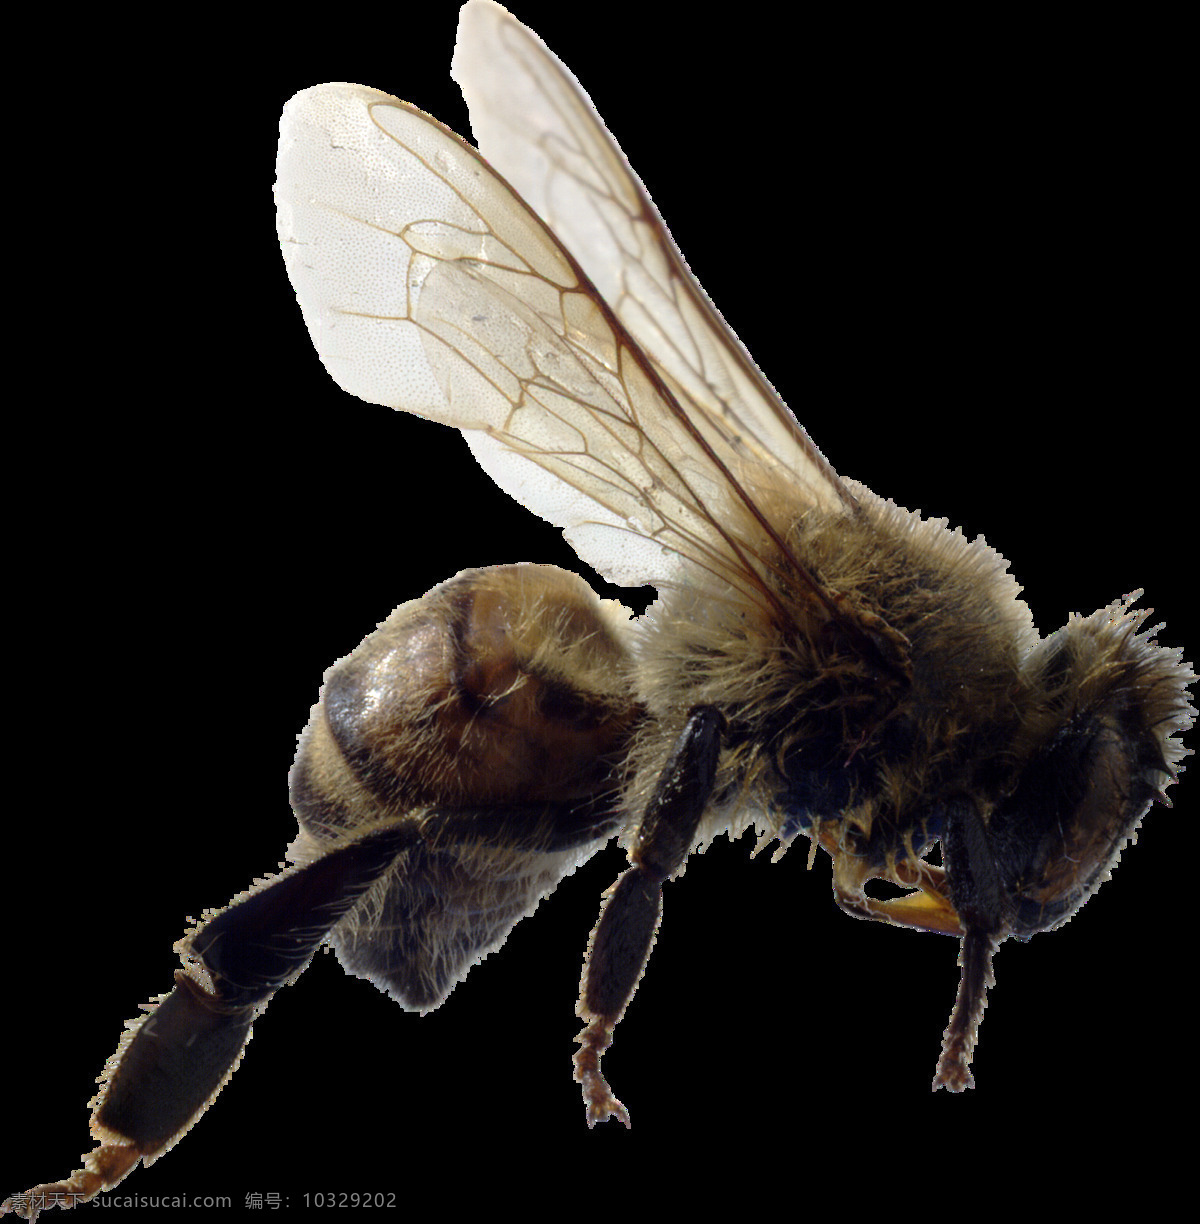 自然 昆虫 小 蜜蜂 自然界昆虫 小蜜蜂 蜜蜂图案 蜜蜂飞行 生物世界